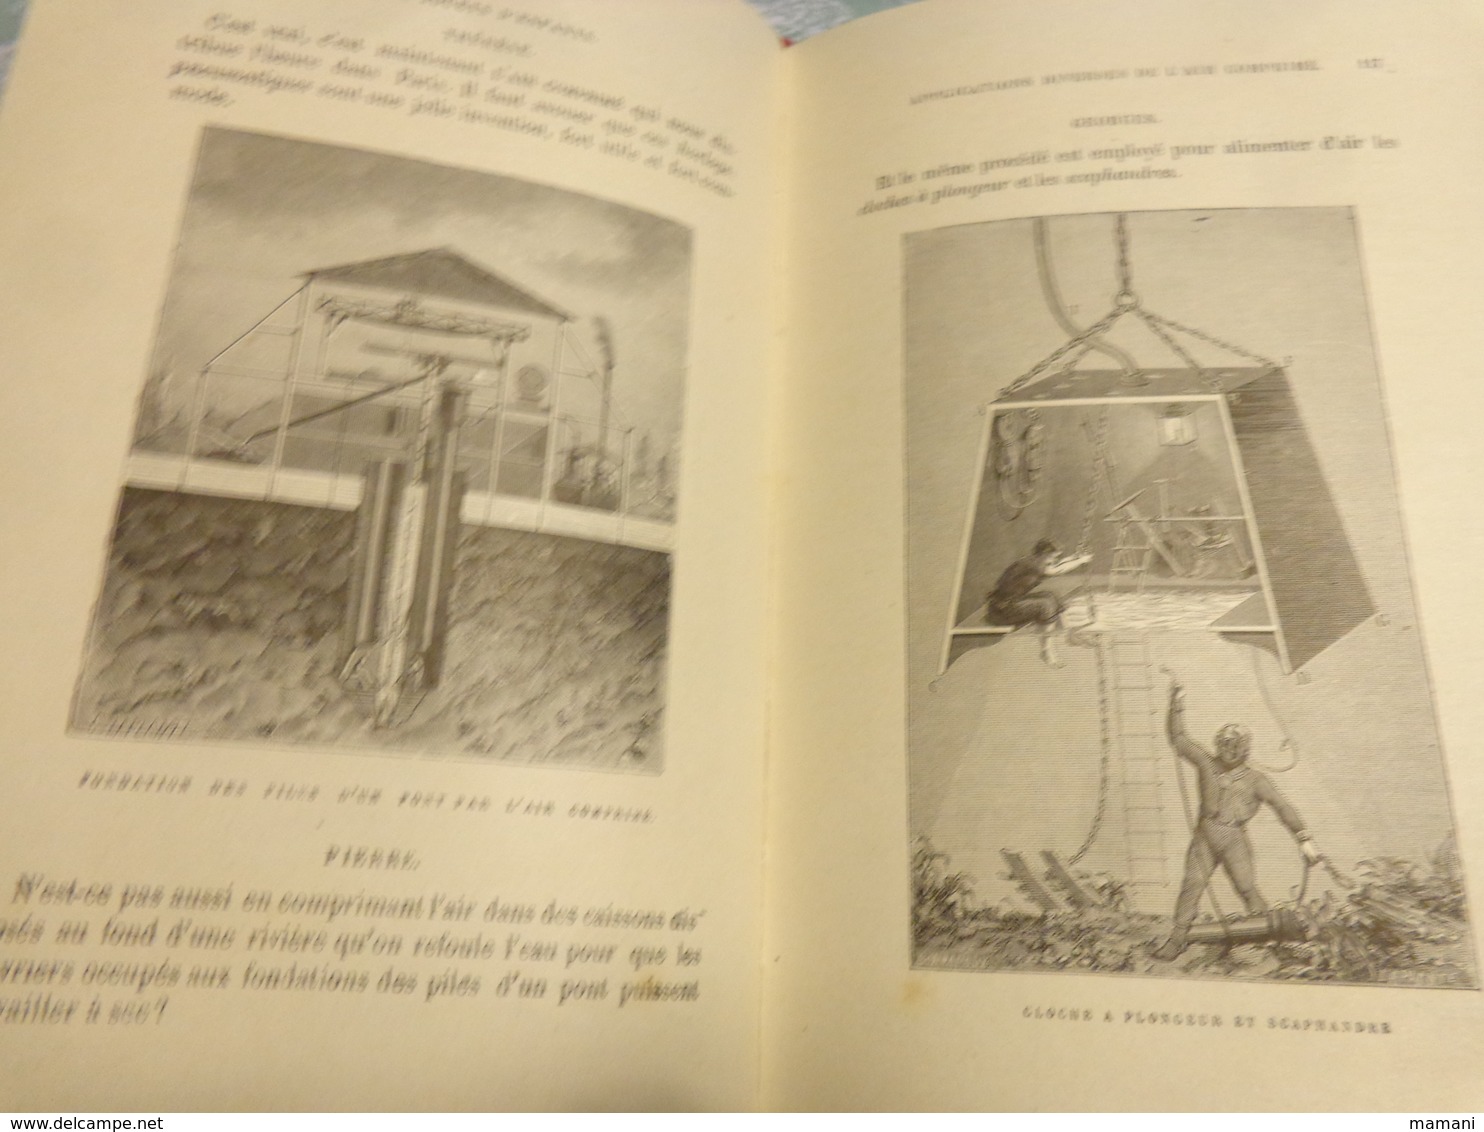 livre recompense -college de cette-les jouets d'enfants par gustave demoulin 3eme edition-1889-polichinelle -poupee etc.